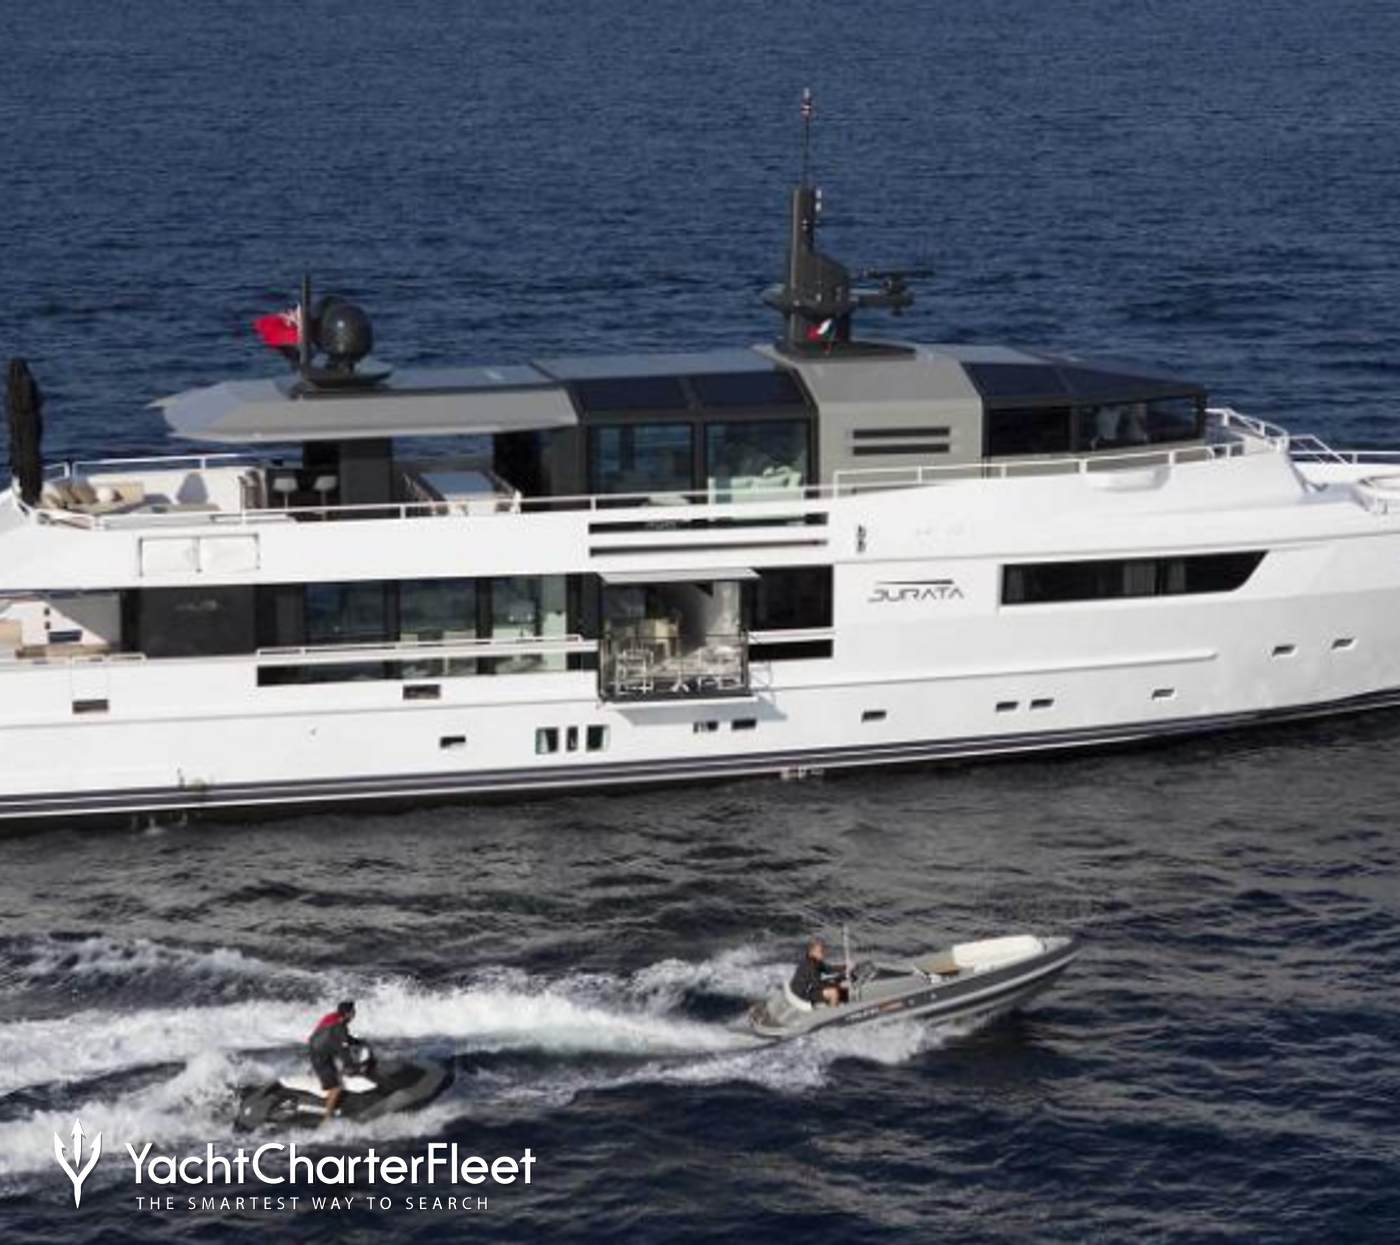 jurata yacht